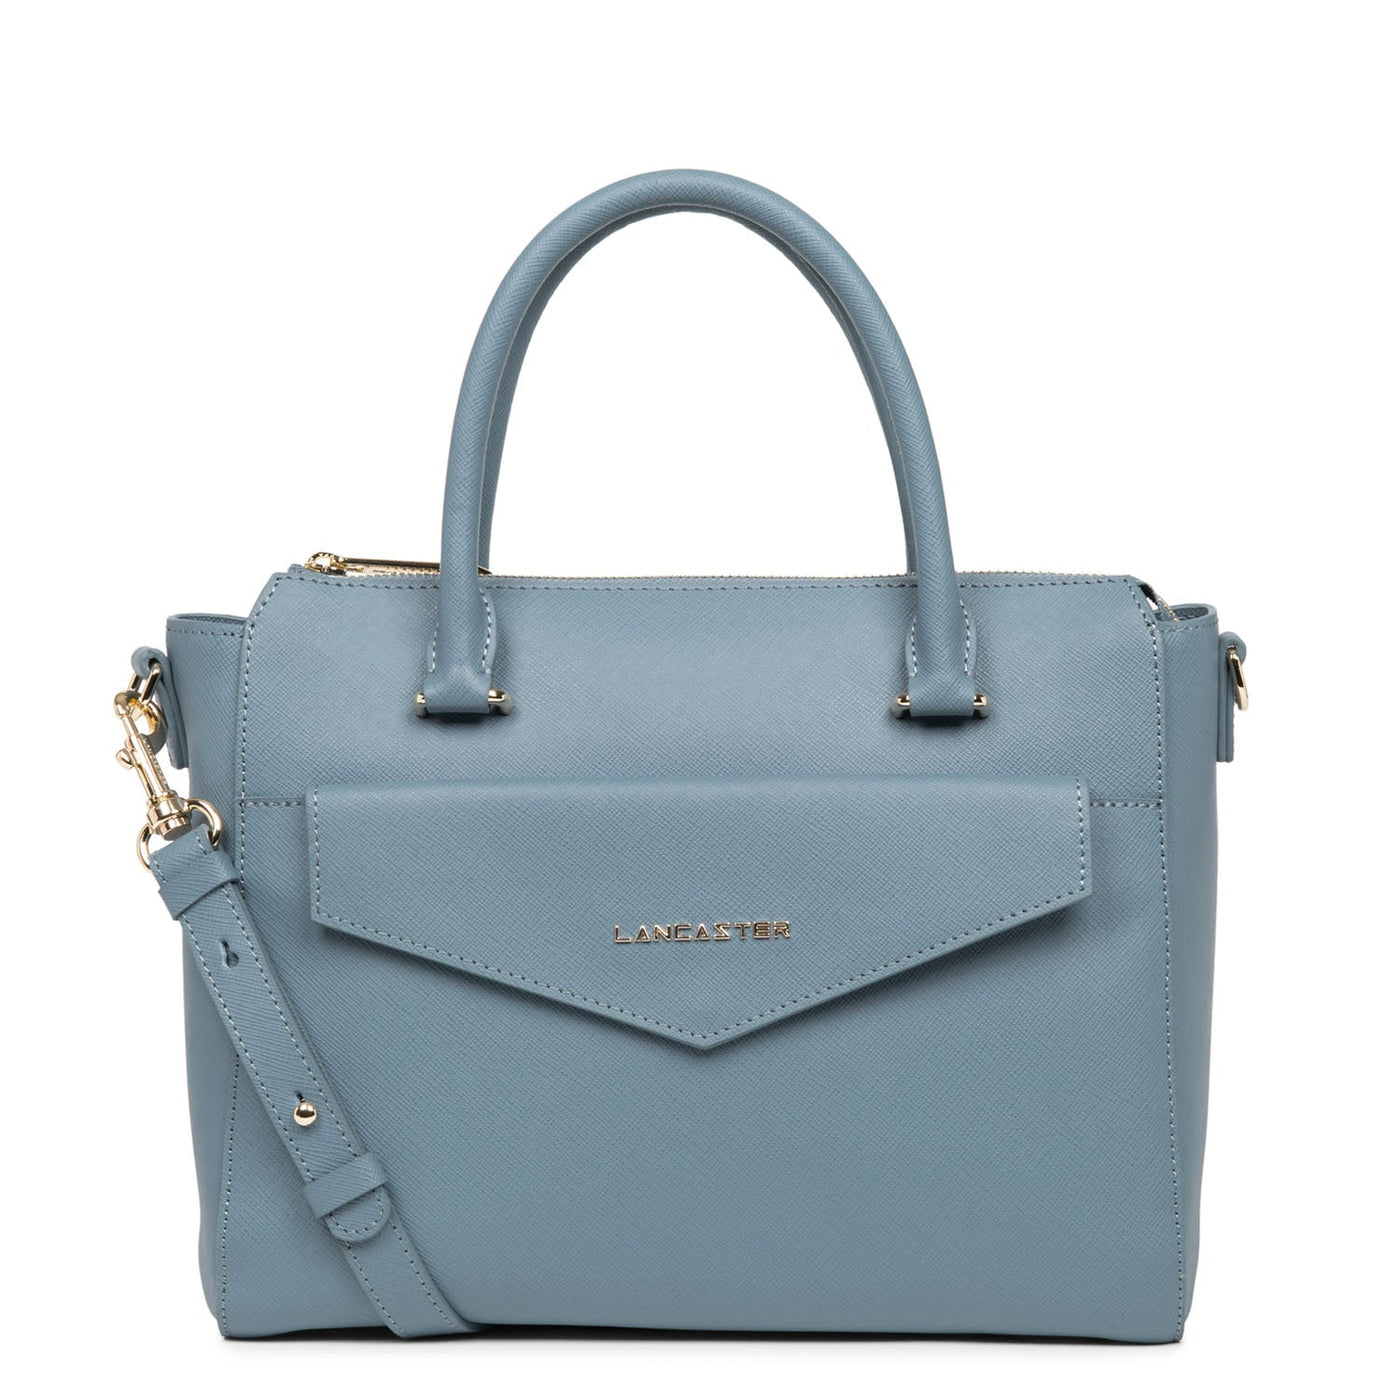 handbag - saffiano signature #couleur_bleu-ardoise